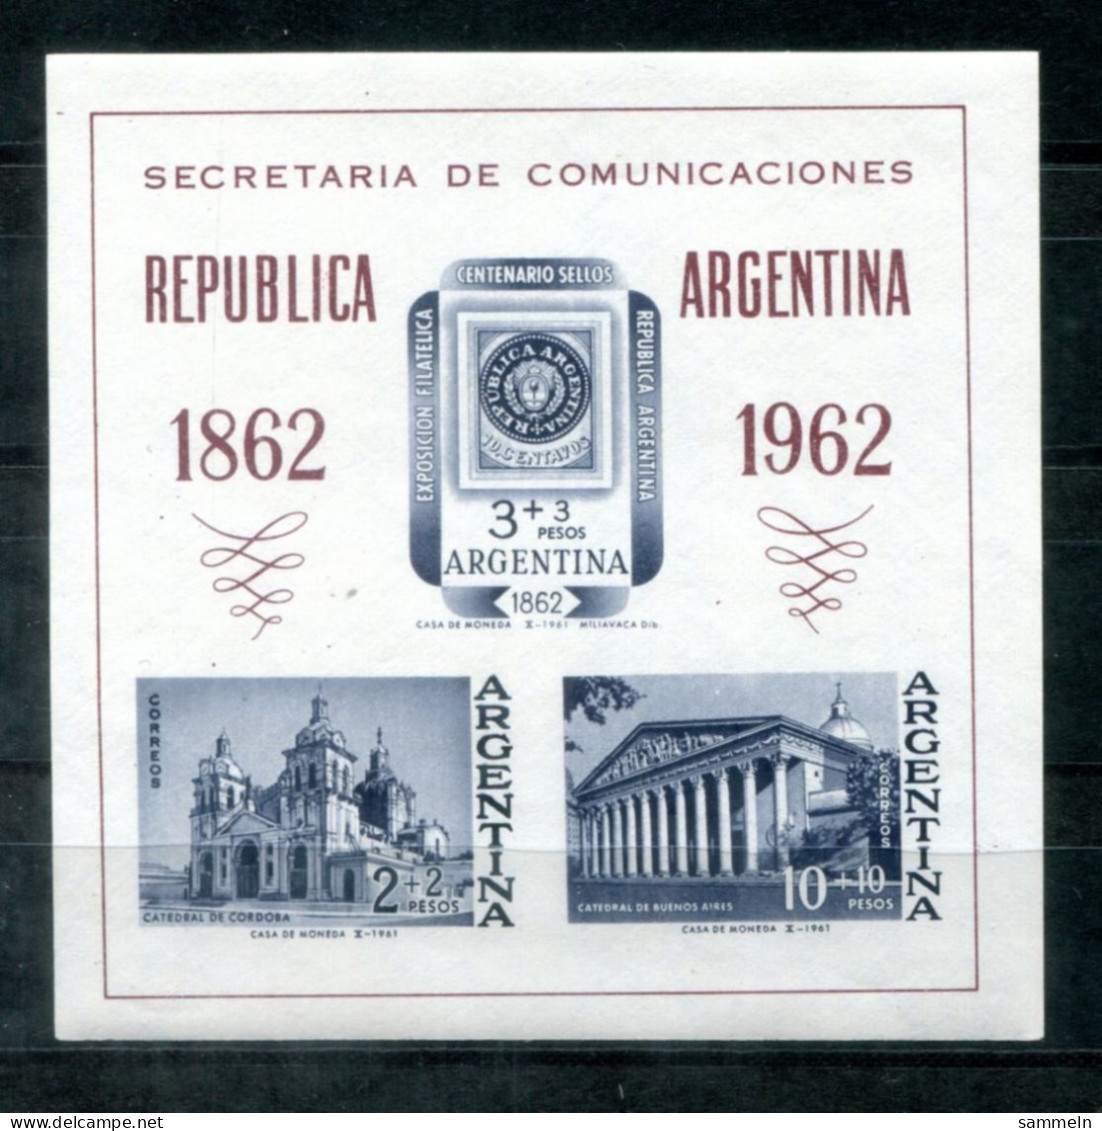 ARGENTINIEN Block 15, Bl.15 Mnh - Marke Auf Marke, Stamp On Stamp, Timbre Sur Timbre - ARGENTINA / ARGENTINE - Blocs-feuillets